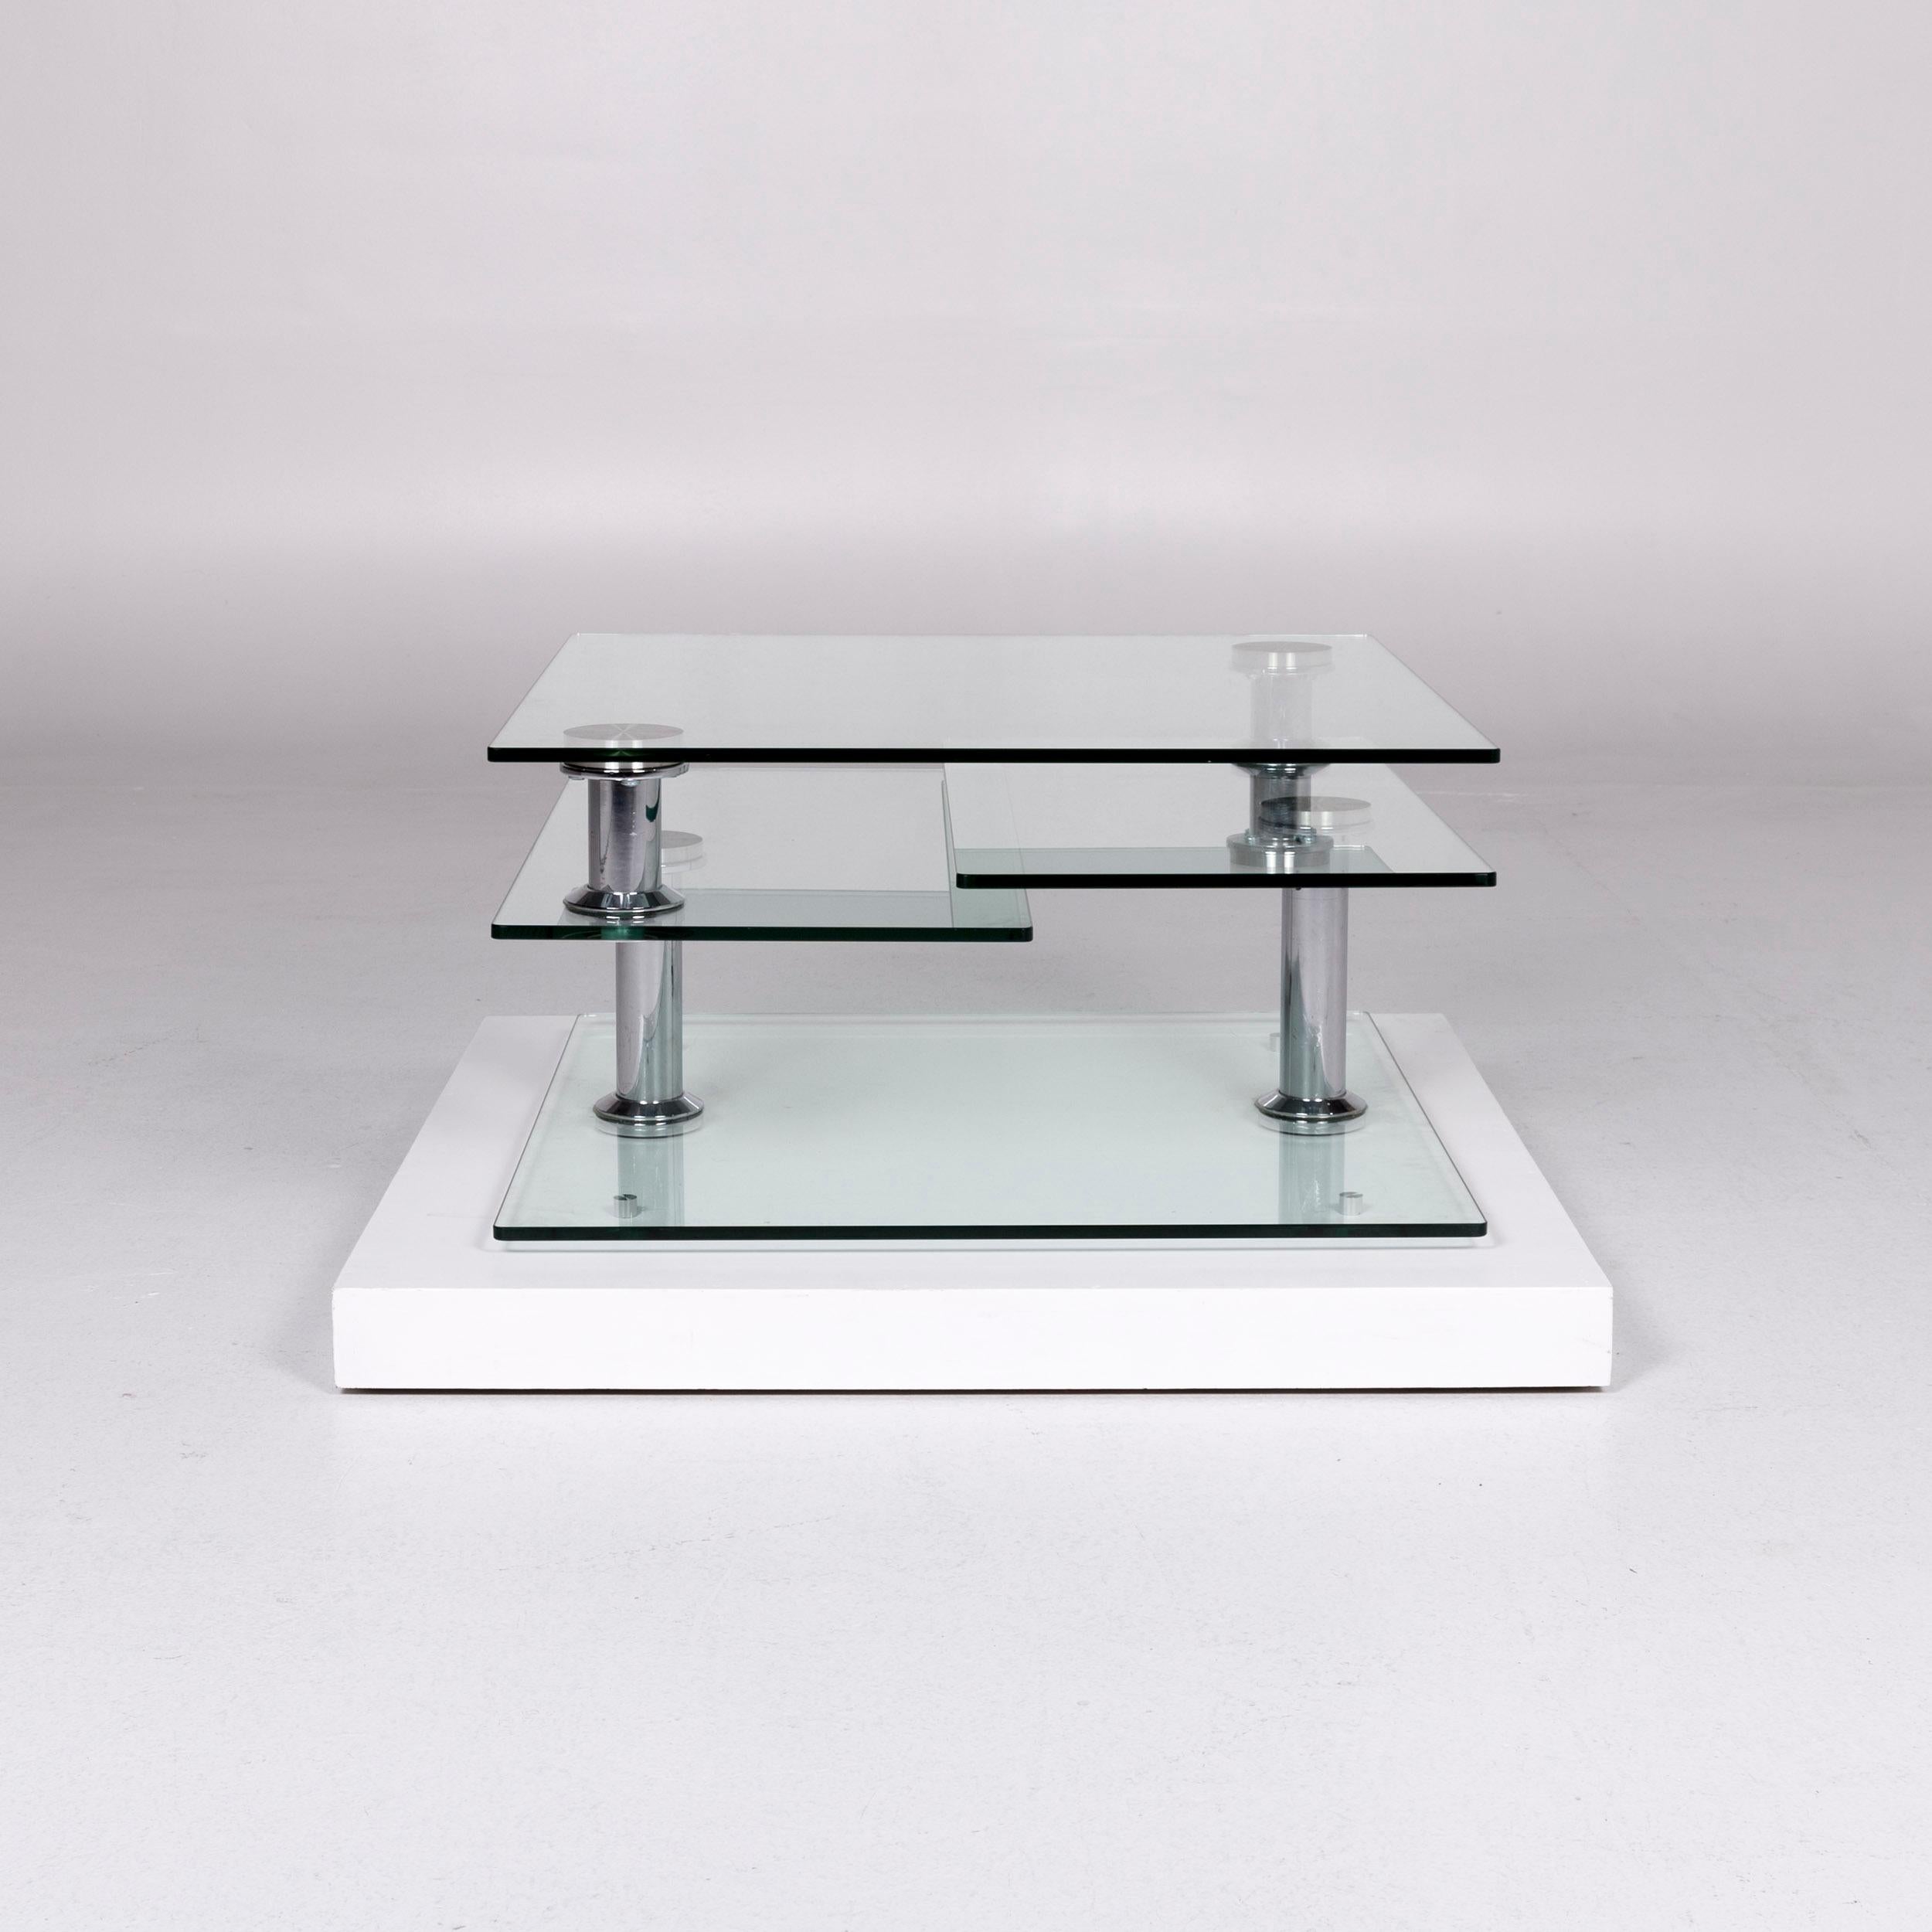 Hülsta Glass Couchtisch Silber Chrome Function Tisch 6